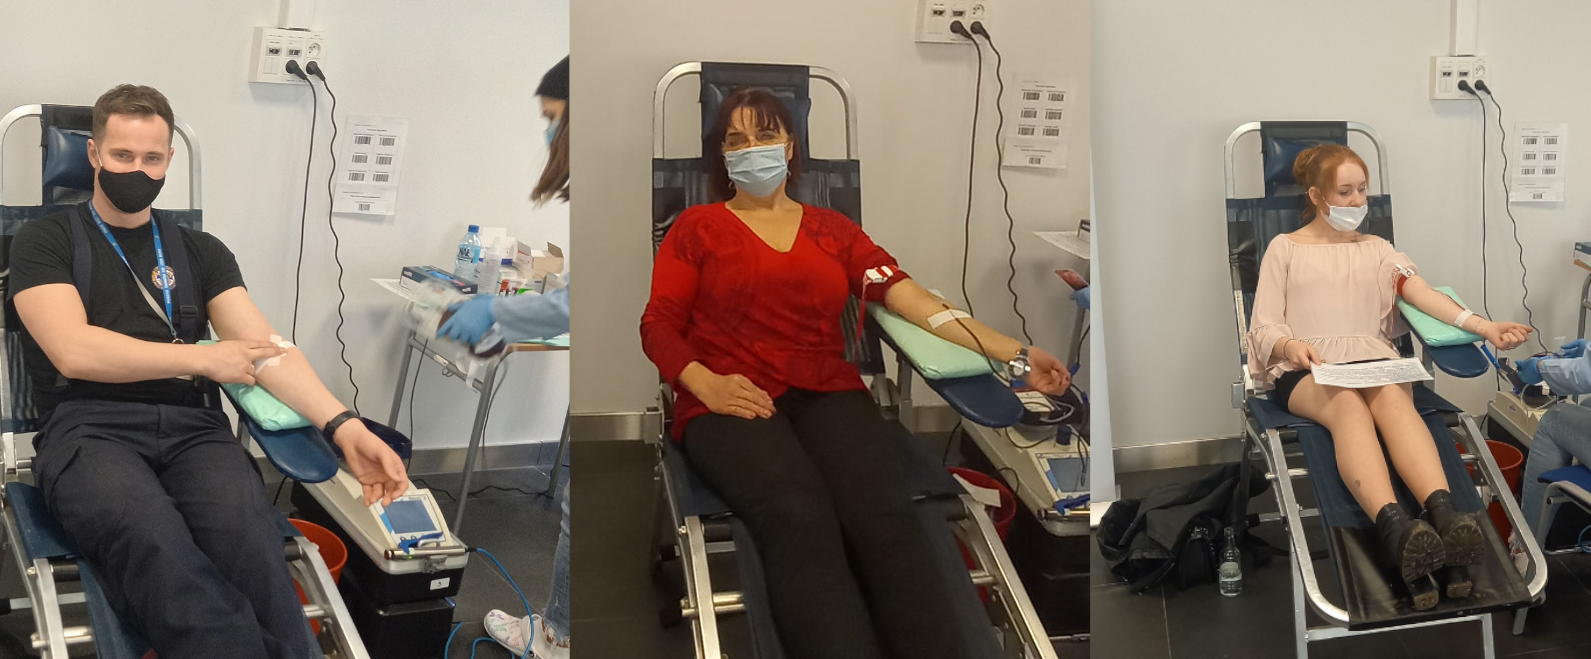 Wspólny sukces akcji krwiodawstwa Grupy Azoty S.A. i Klubu Honorowych Dawców Krwi PCK przy Grupie Azoty S.A.!